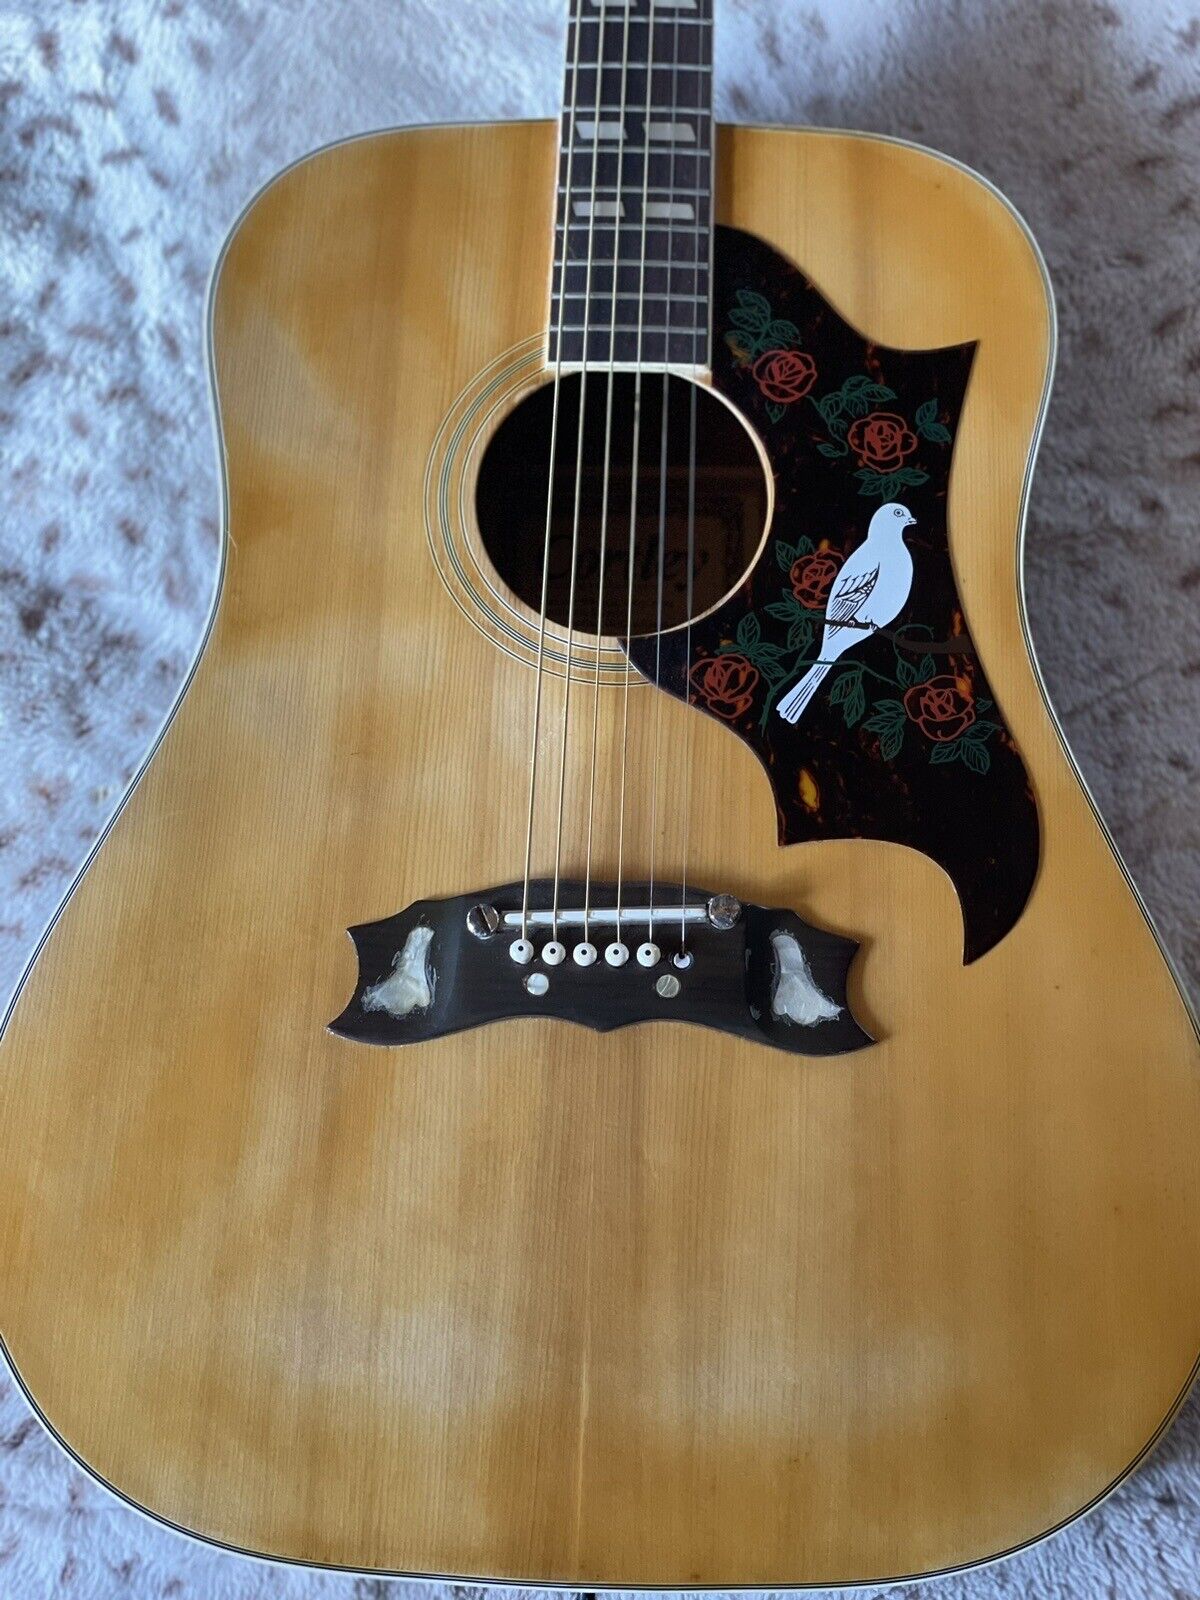 Cortley Dove Guitar 9